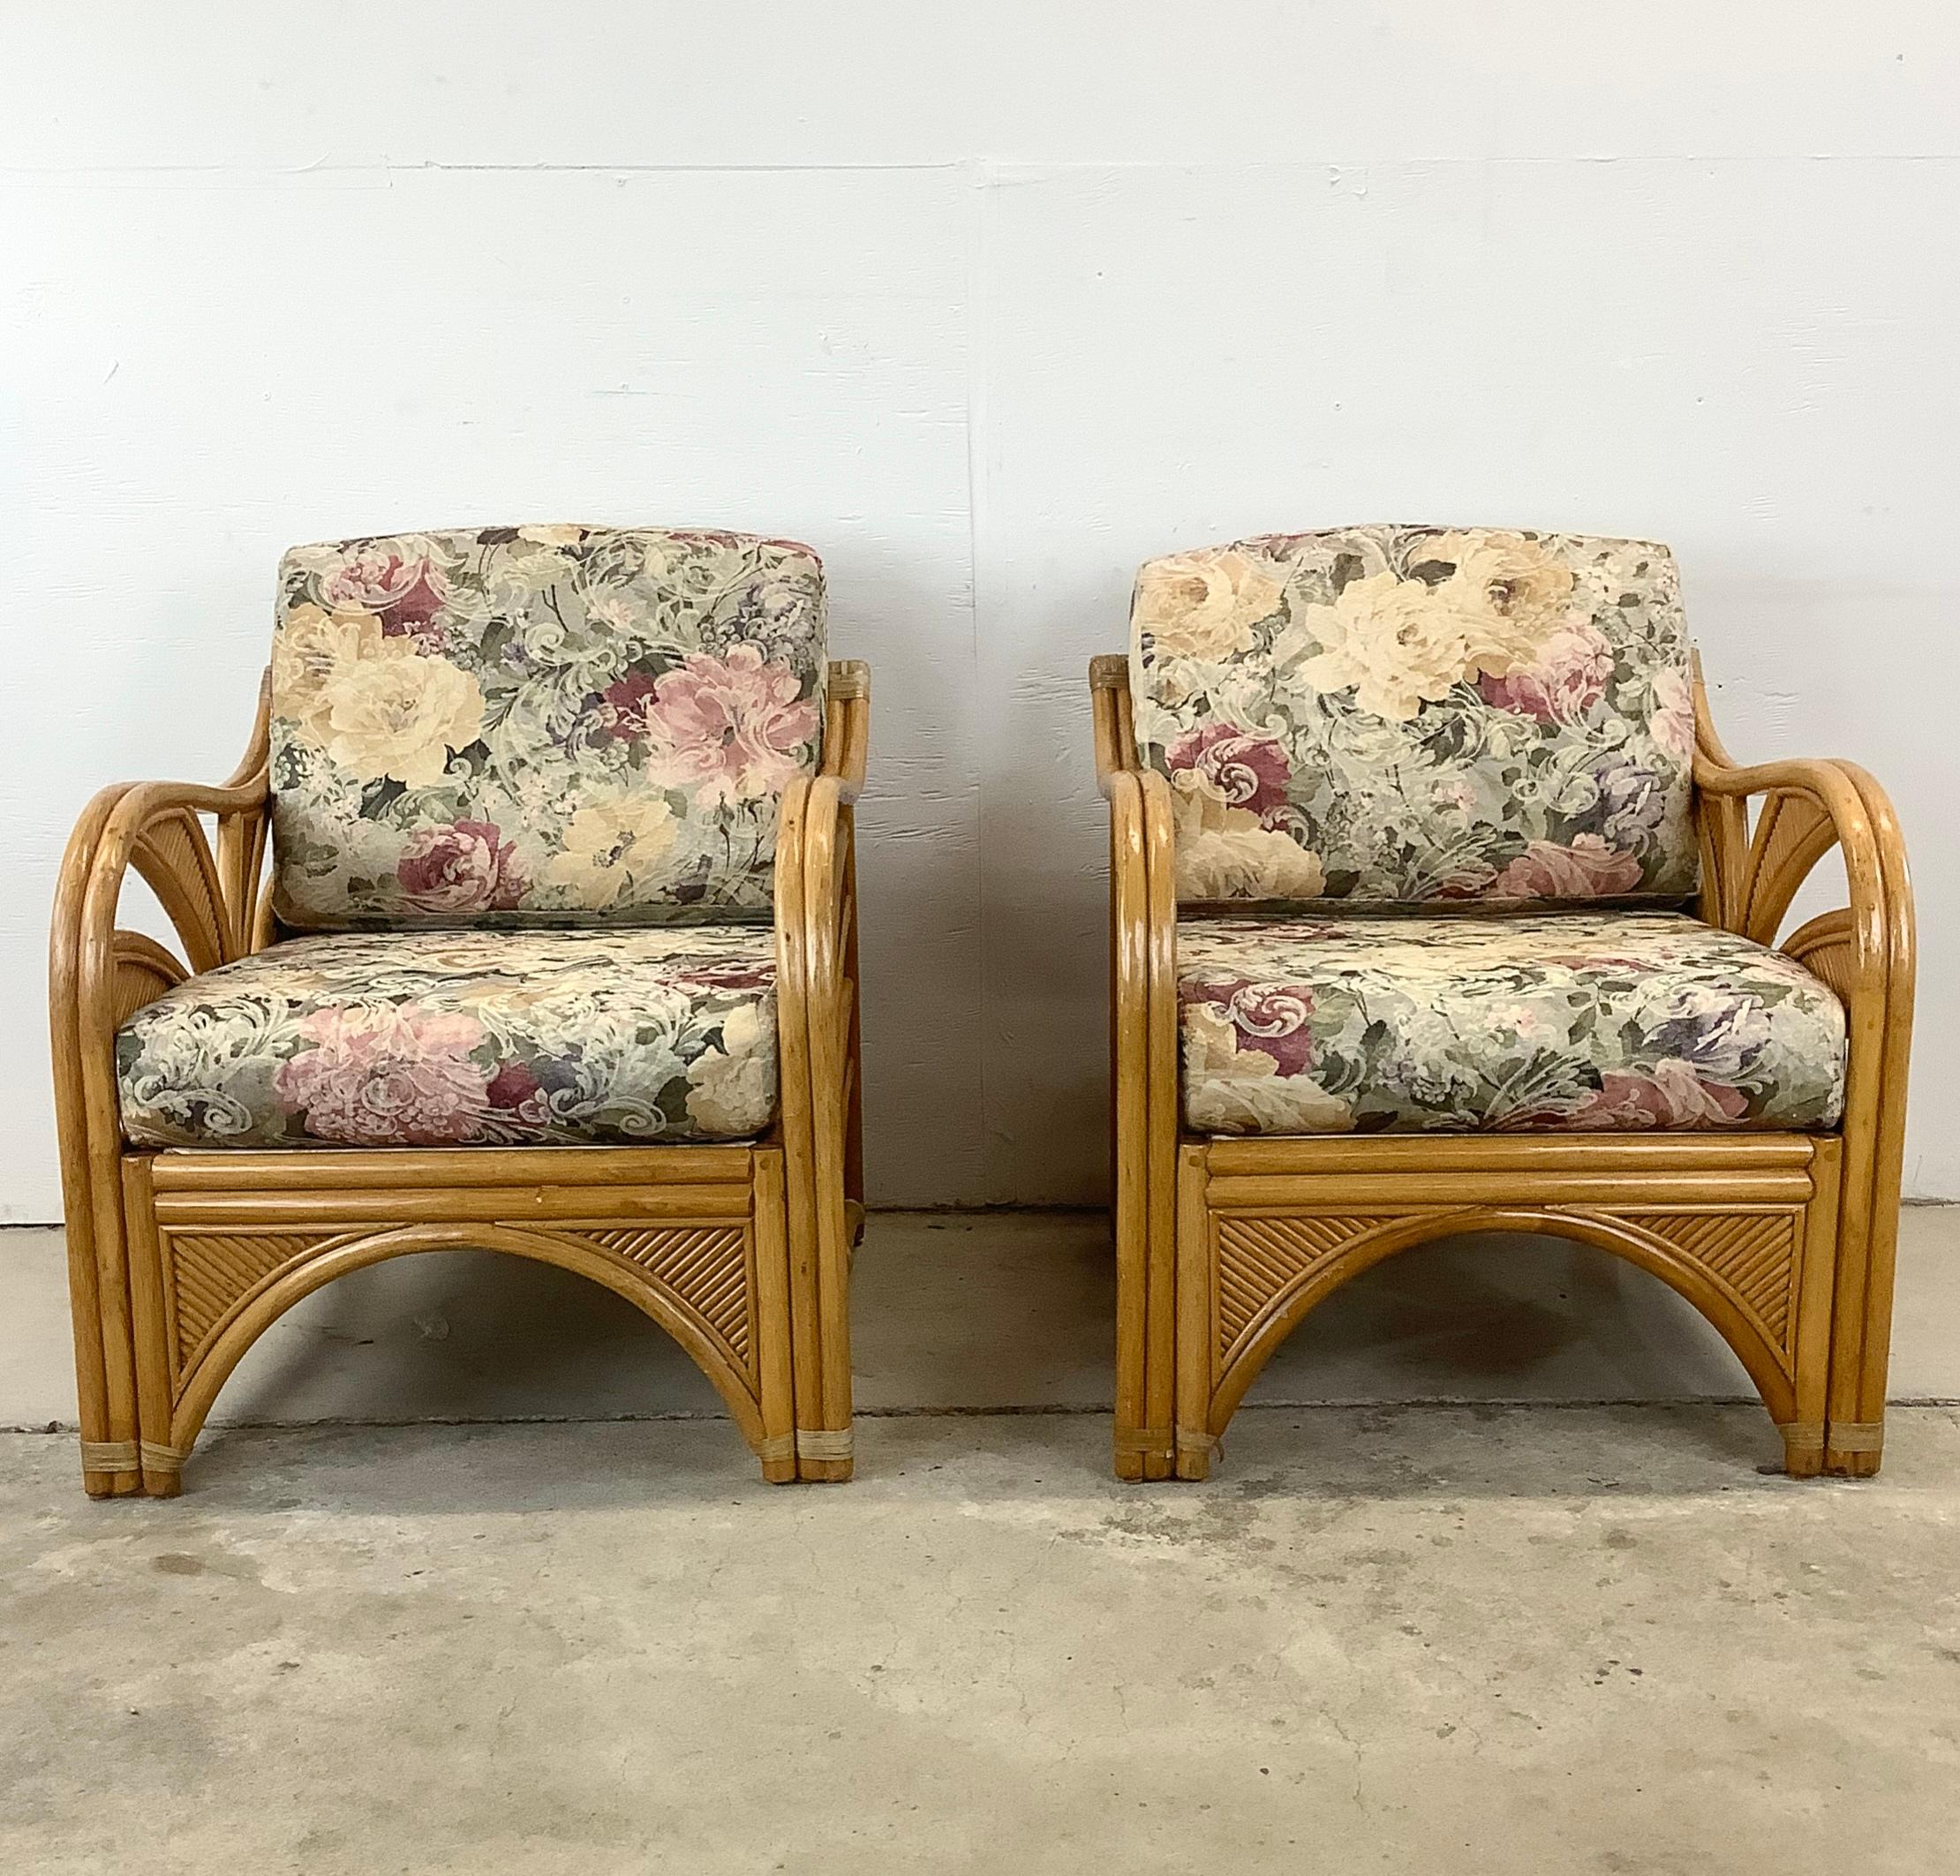 Dieses Paar Rattan-Loungesessel im Vintage-Stil bietet eine reizvolle Mischung aus klassischem Design und komfortabler Funktionalität und passt perfekt zu jeder modernen oder Vintage-inspirierten Einrichtung. Jeder Stuhl besteht aus einem stabilen